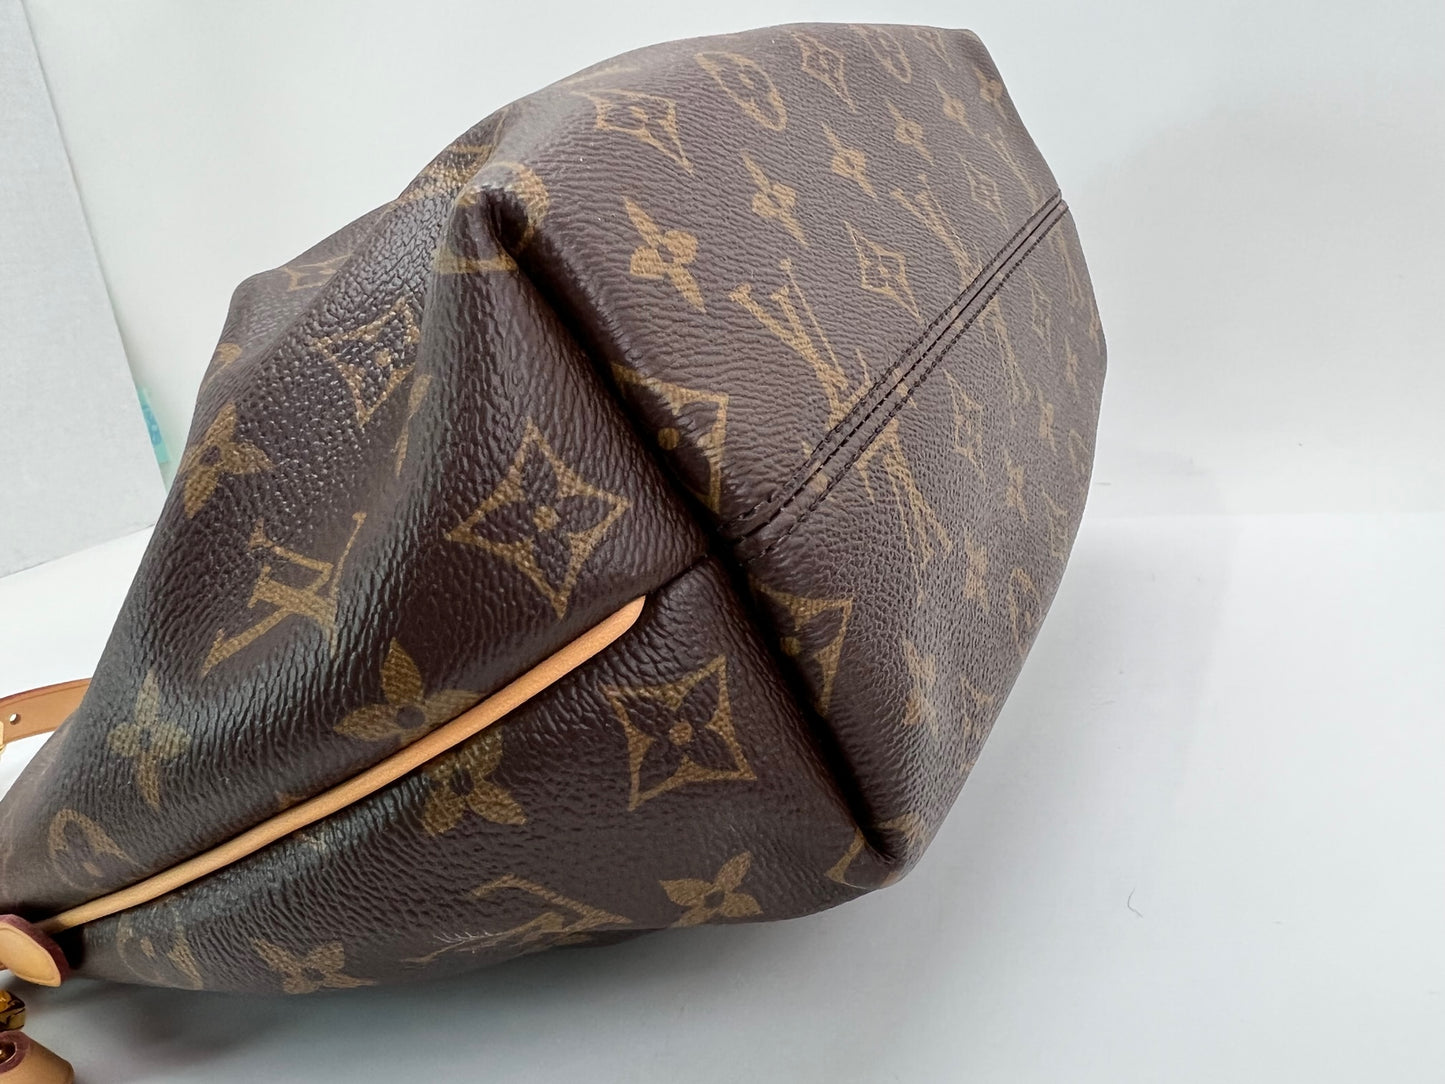 Louis Vuitton Turenne PM Monogram Canvas Hand Shoulder Bag